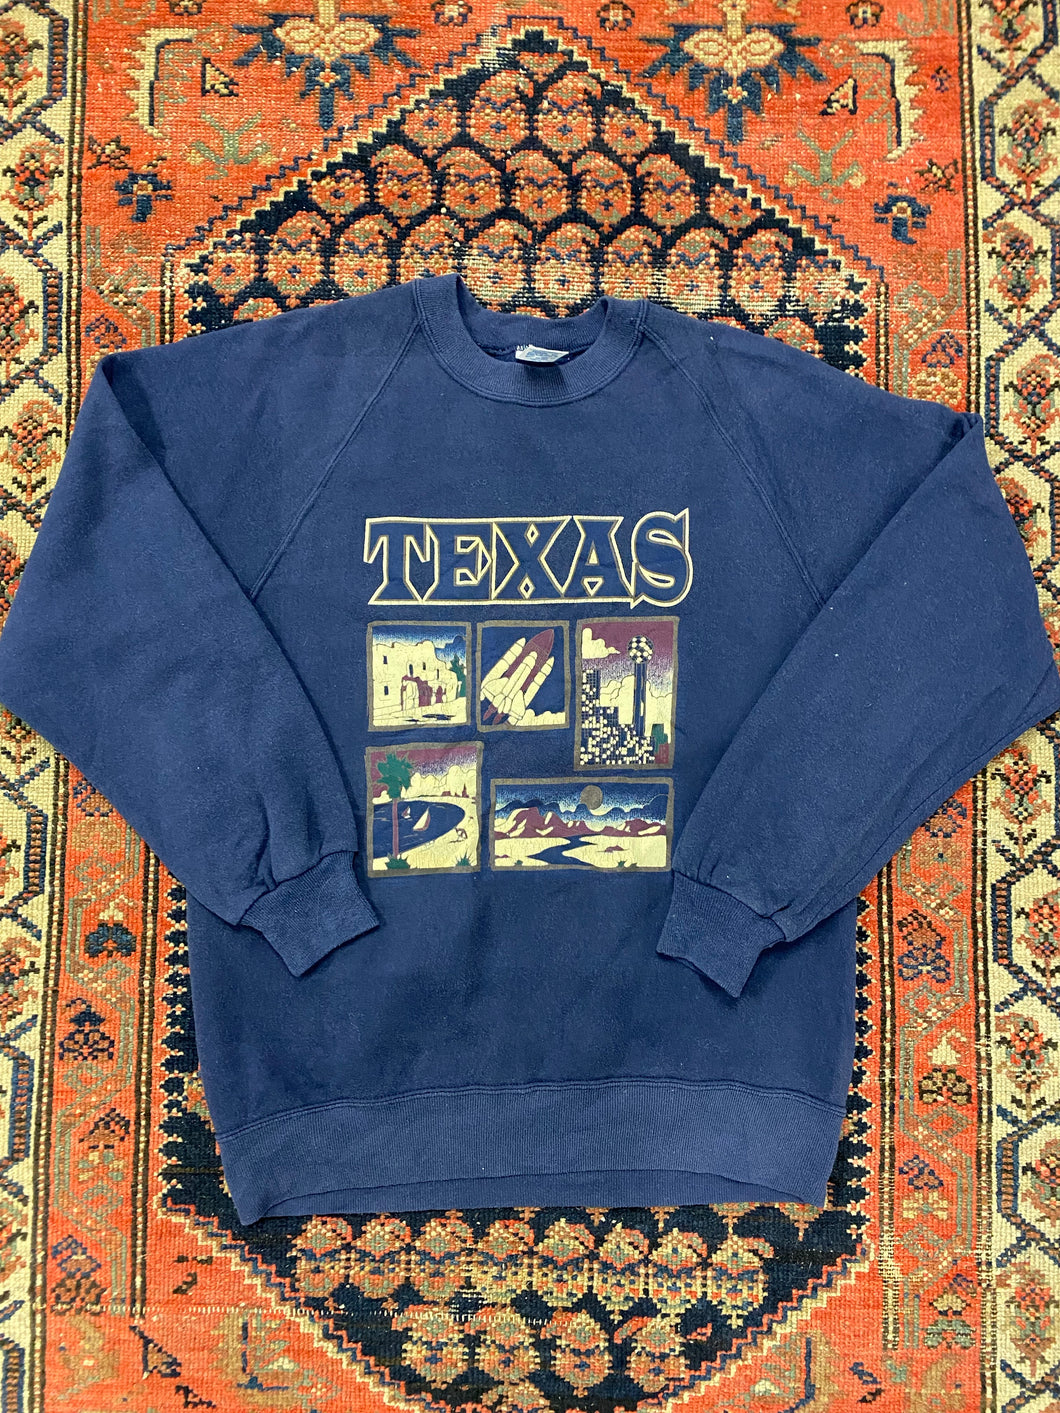 Vintage Texas Crewneck - S